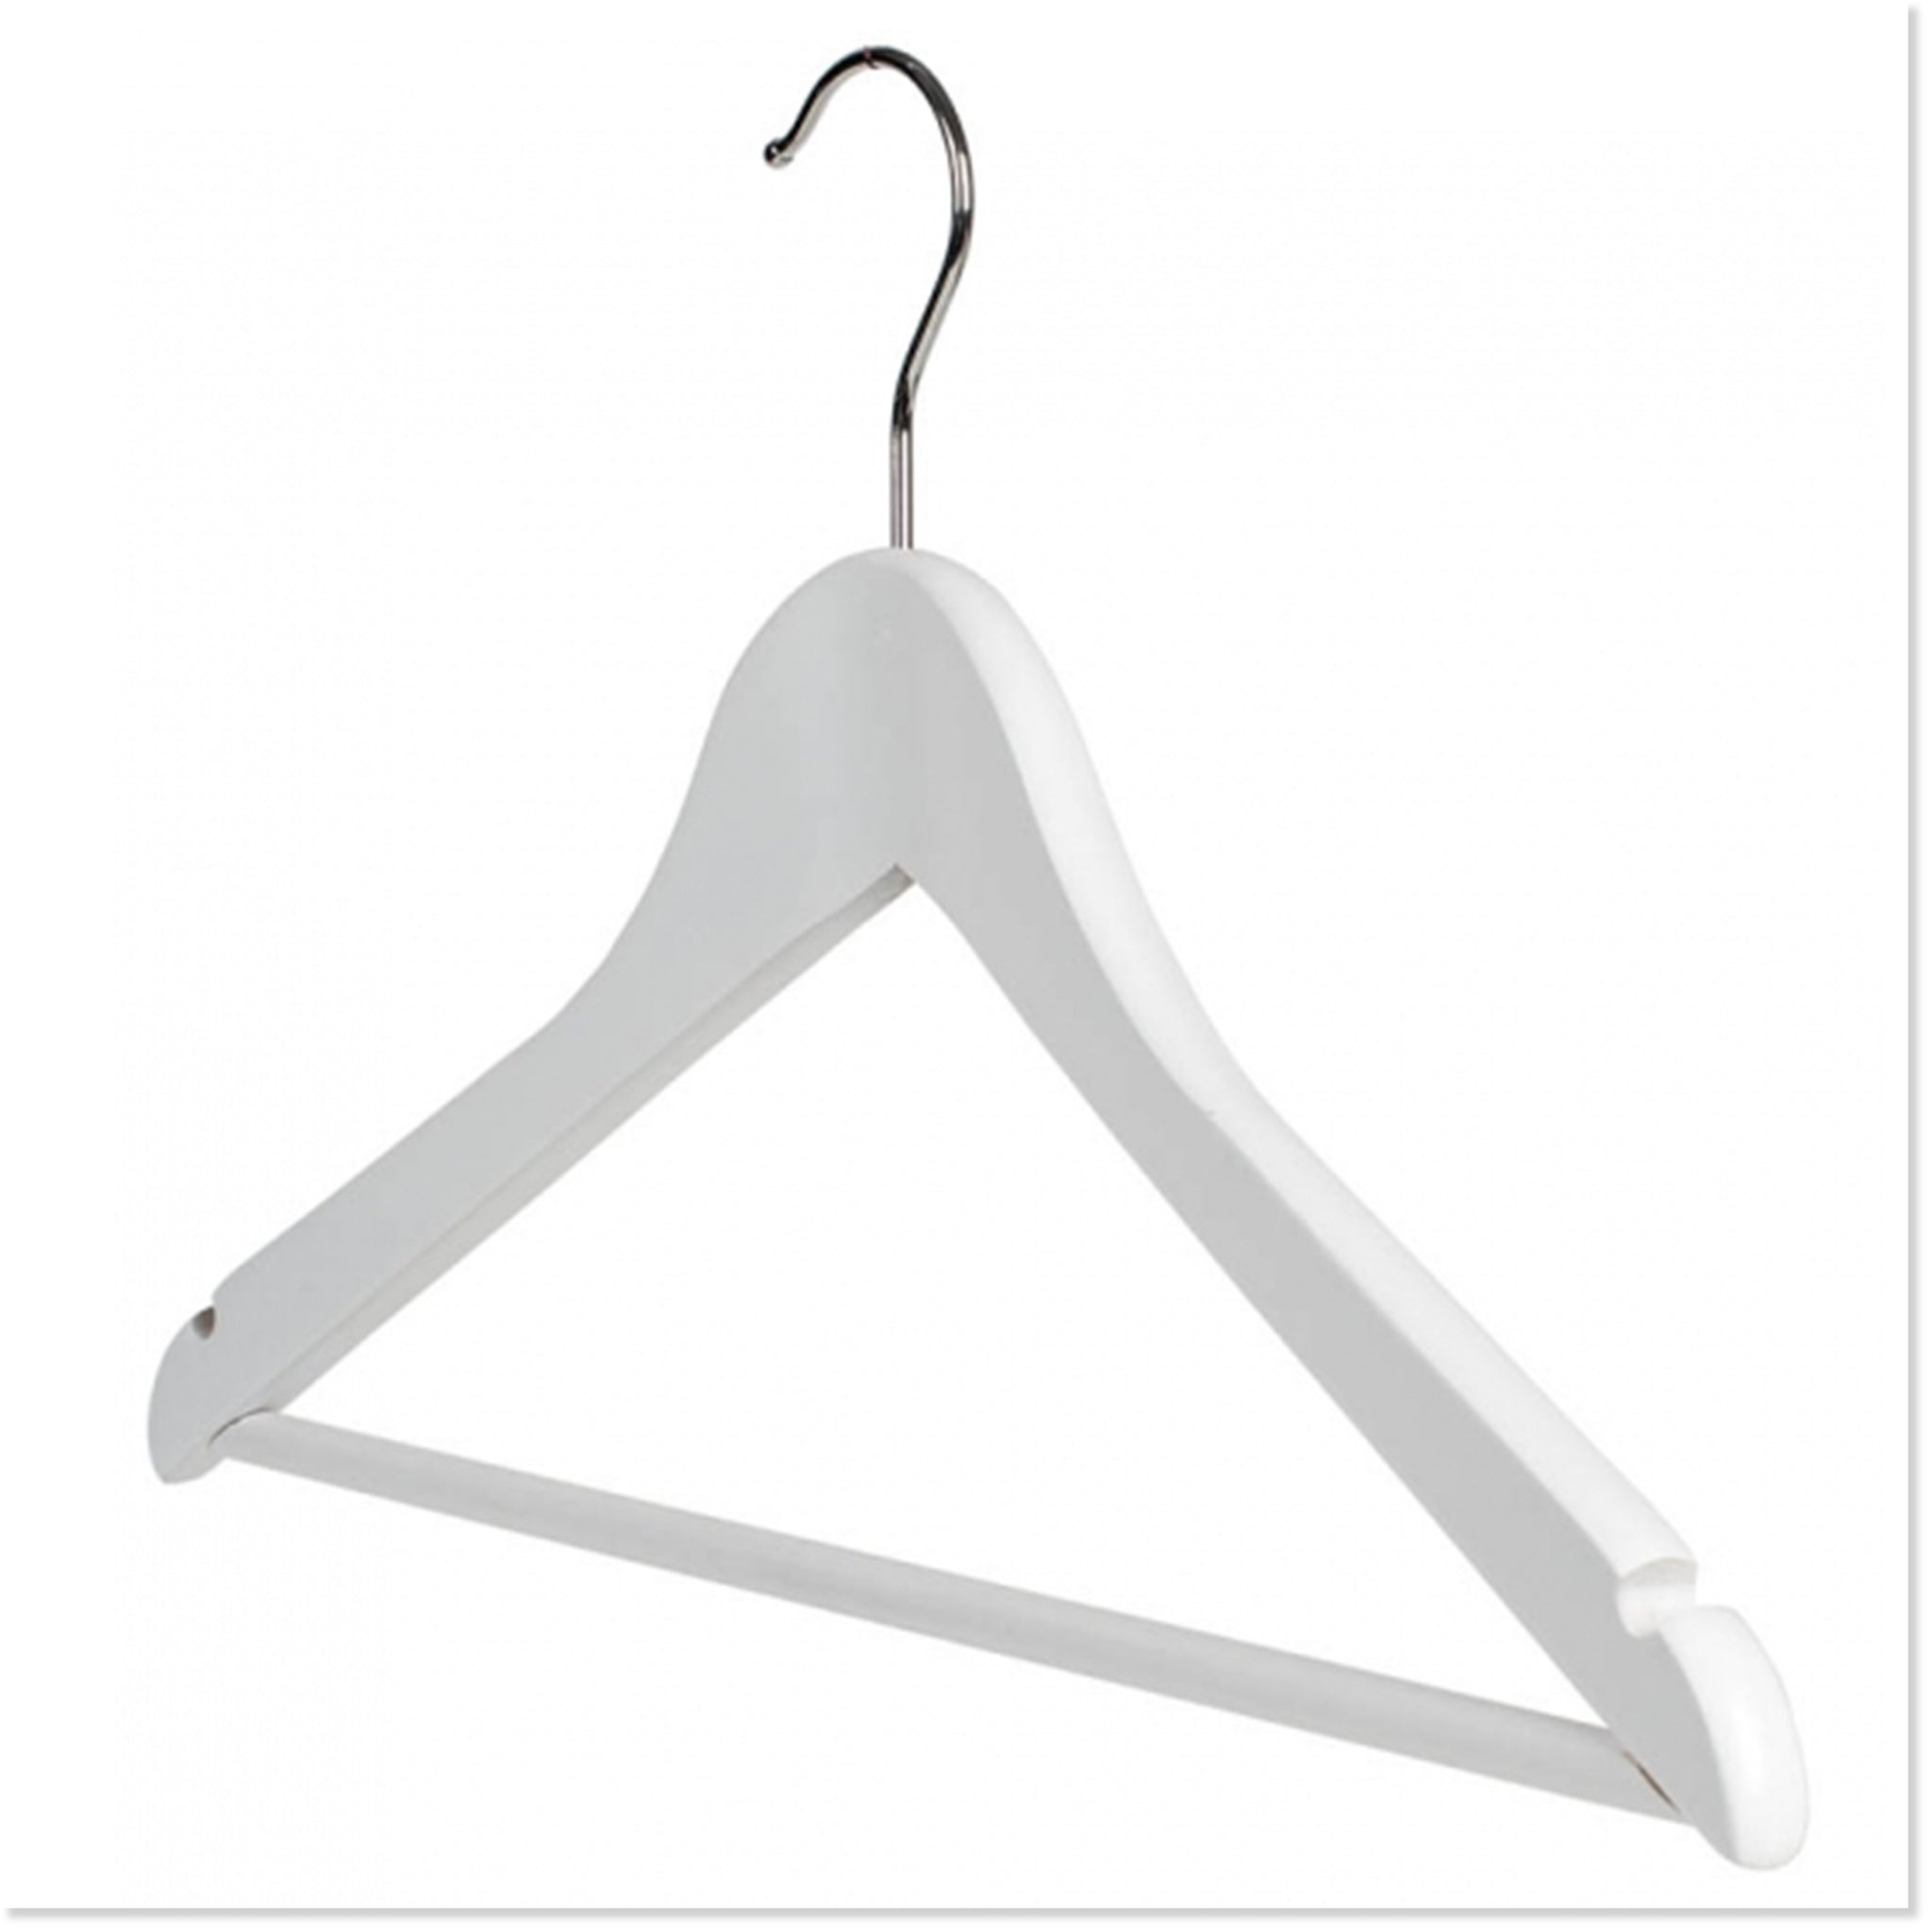 Hangers in Slate - kids metal clothes hangers